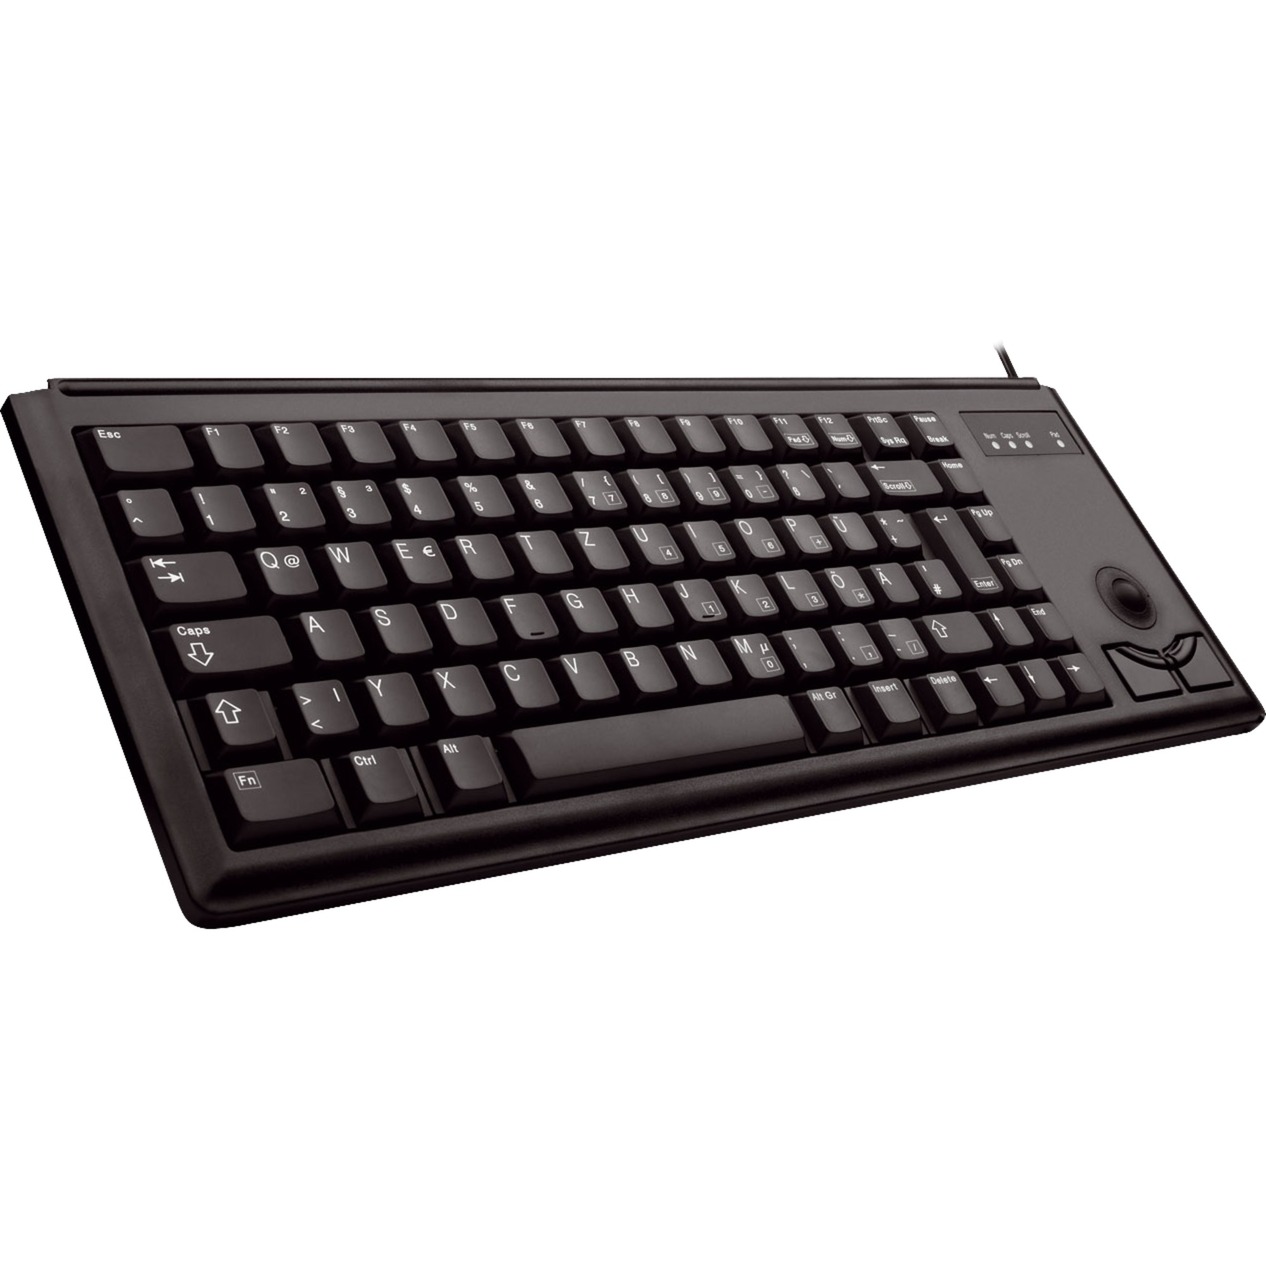 Image of Alternate - Compact Keyboard G84-4420, Tastatur online einkaufen bei Alternate